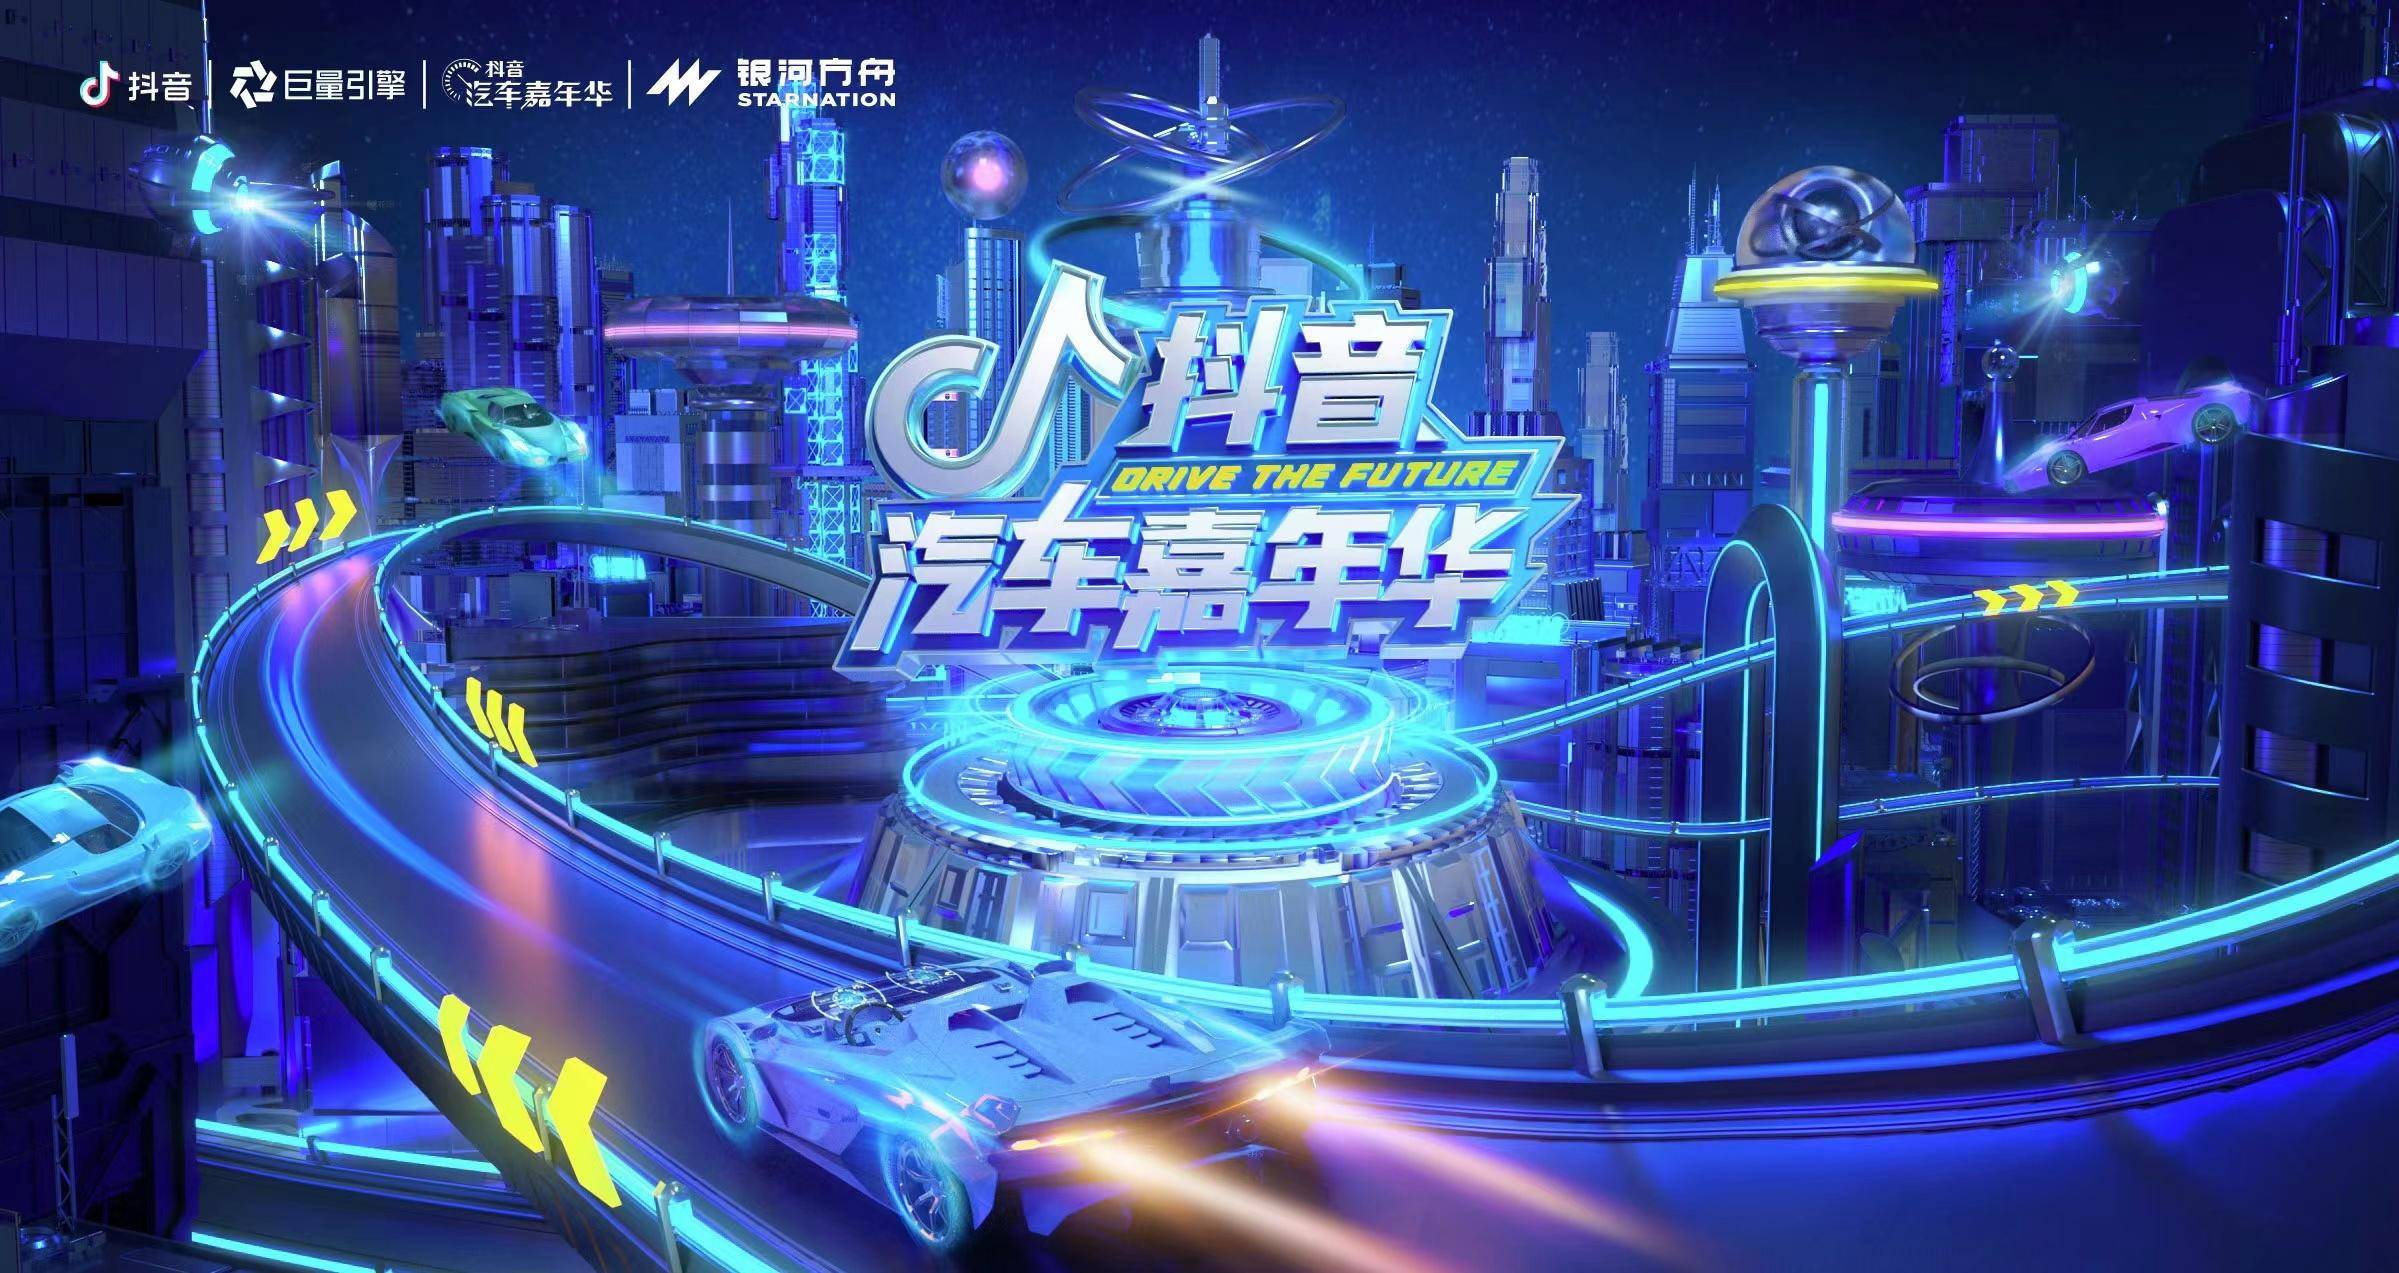 巨量引擎与重庆两江新区管委会达成合作，共同推进汽车产业“破圈”发展